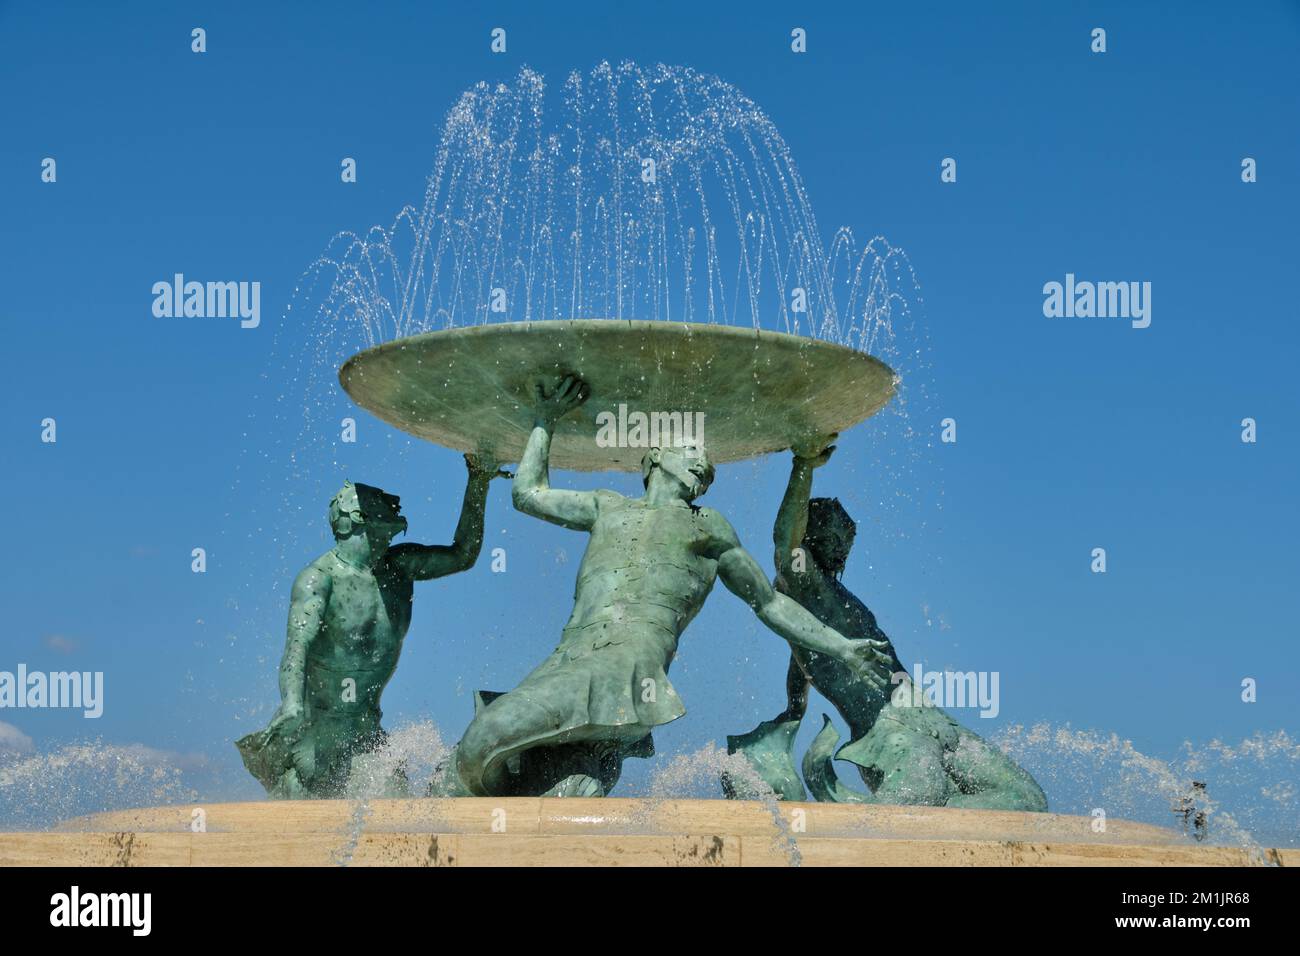 La Fontana dei Tritoni è composta da tre figure bronzee di Tritoni mitologici che reggono un piatto: La Valletta, Malta Foto Stock